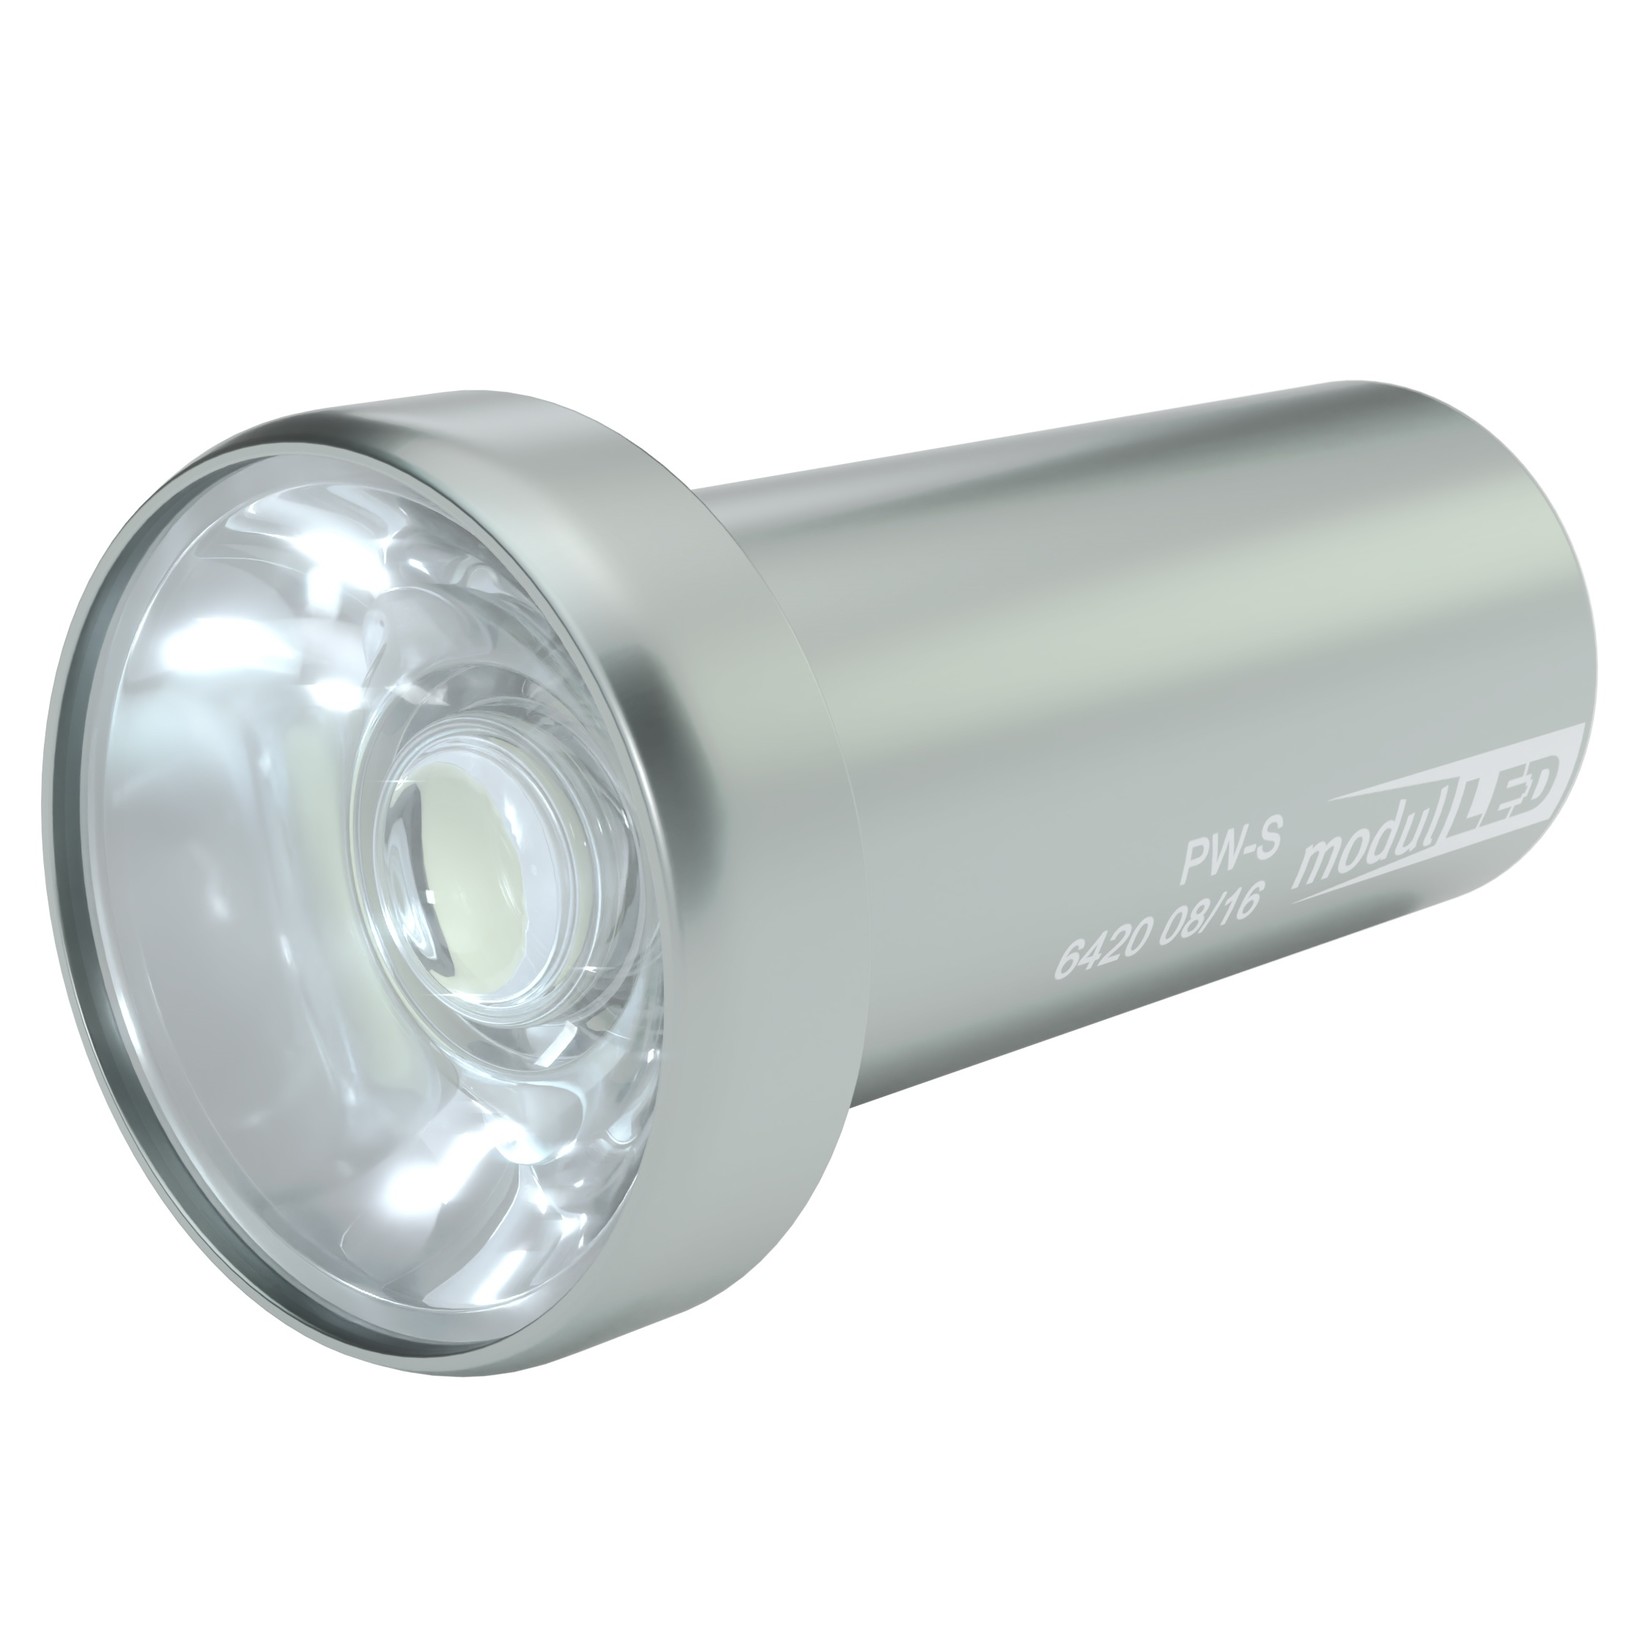 LED-Auflicht für 21-mm wechselbaren LED-Modulen, zweiarmig mit Schutzglas -  Kitotec